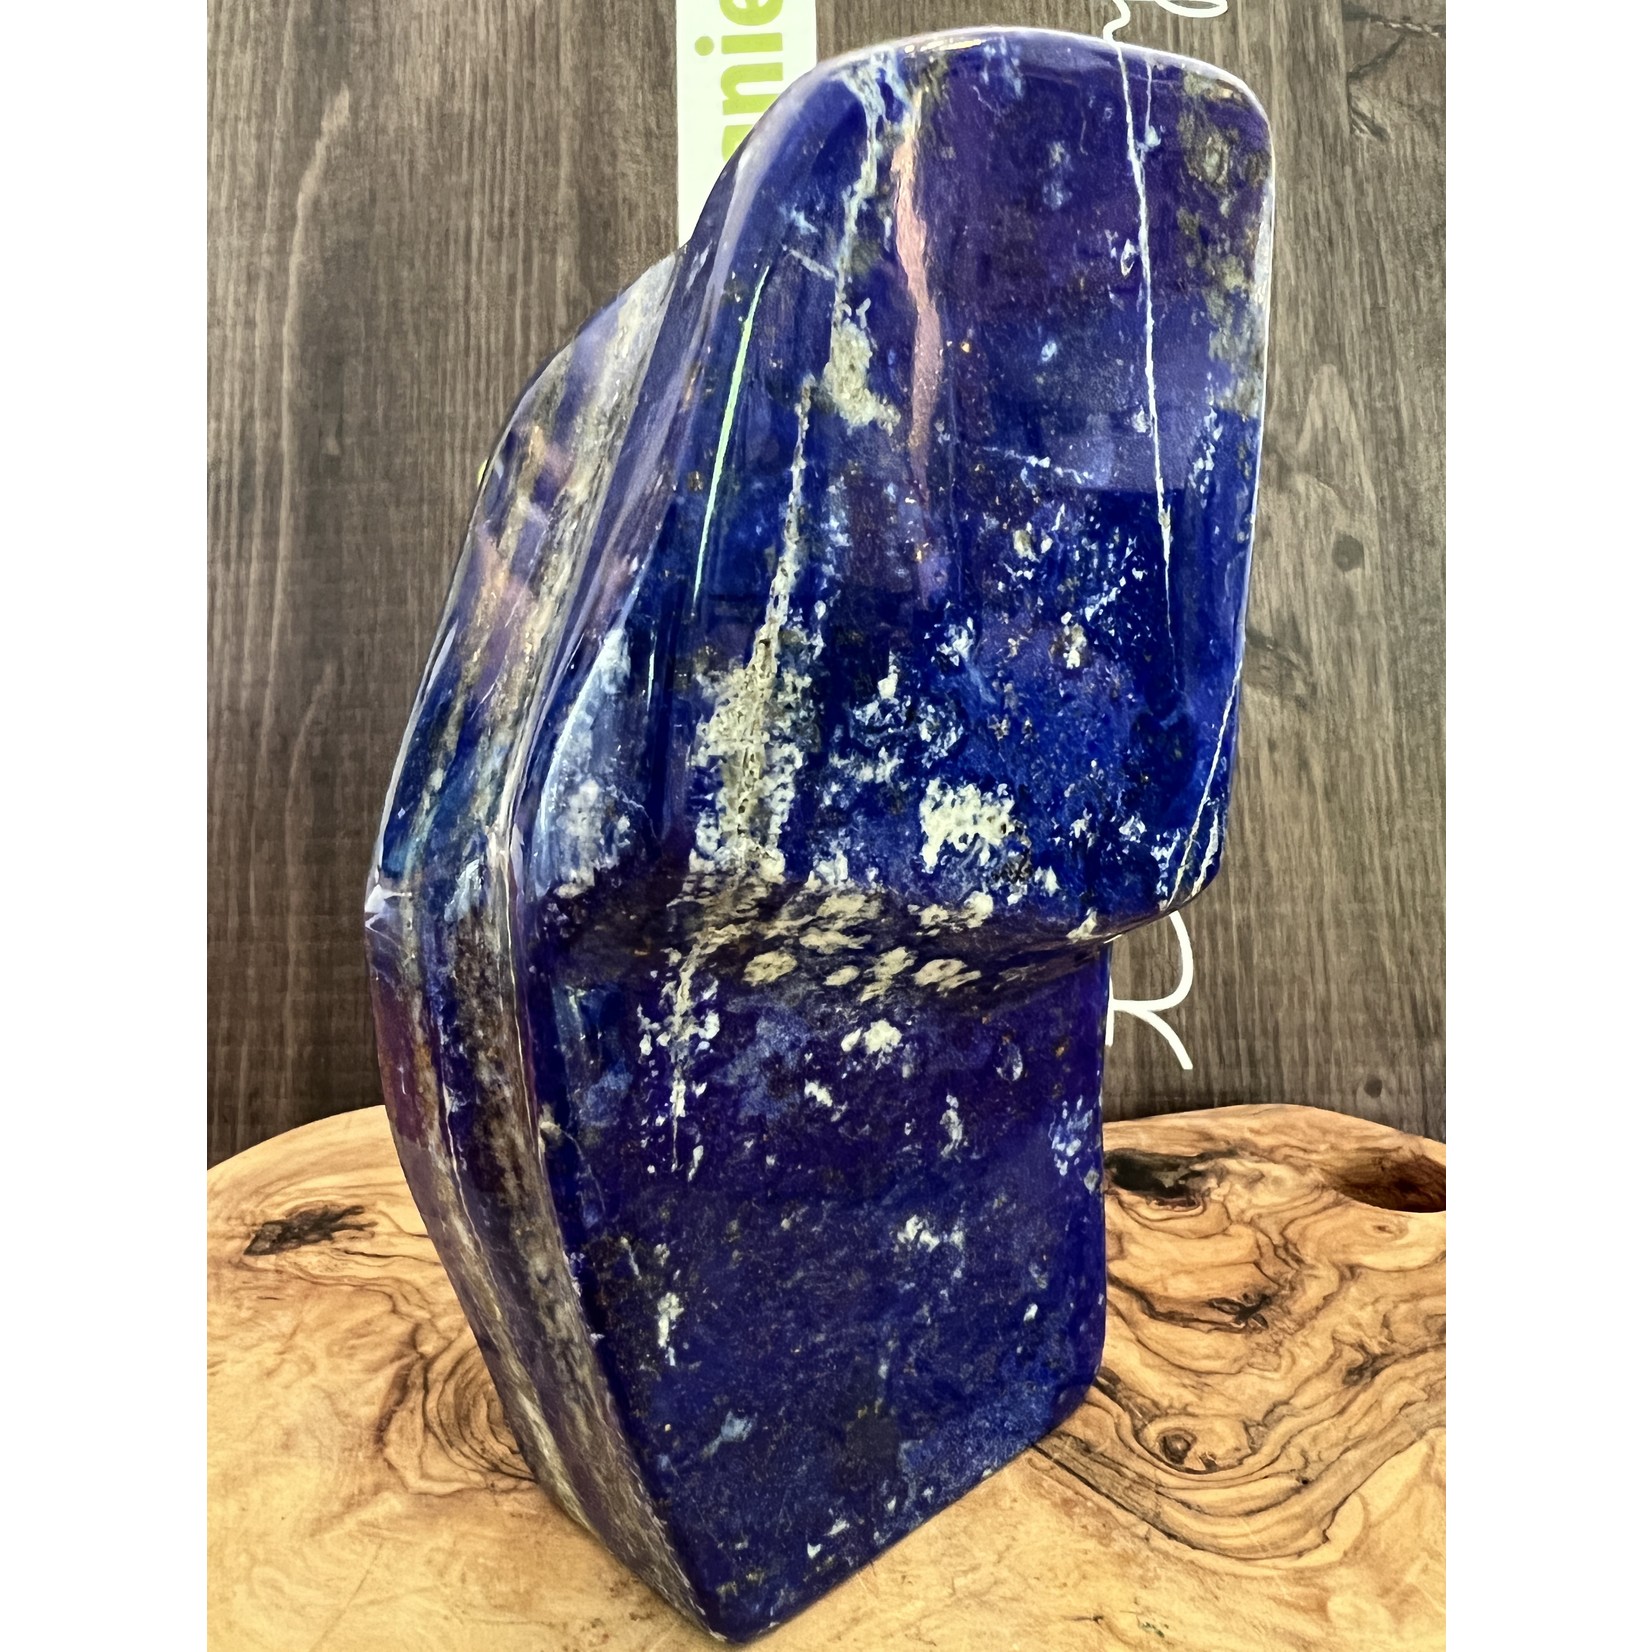 époustouflant lapis lazuli extra large forme libre, reconnu pour apaiser les migraines, bénéfique pour le système respiratoire